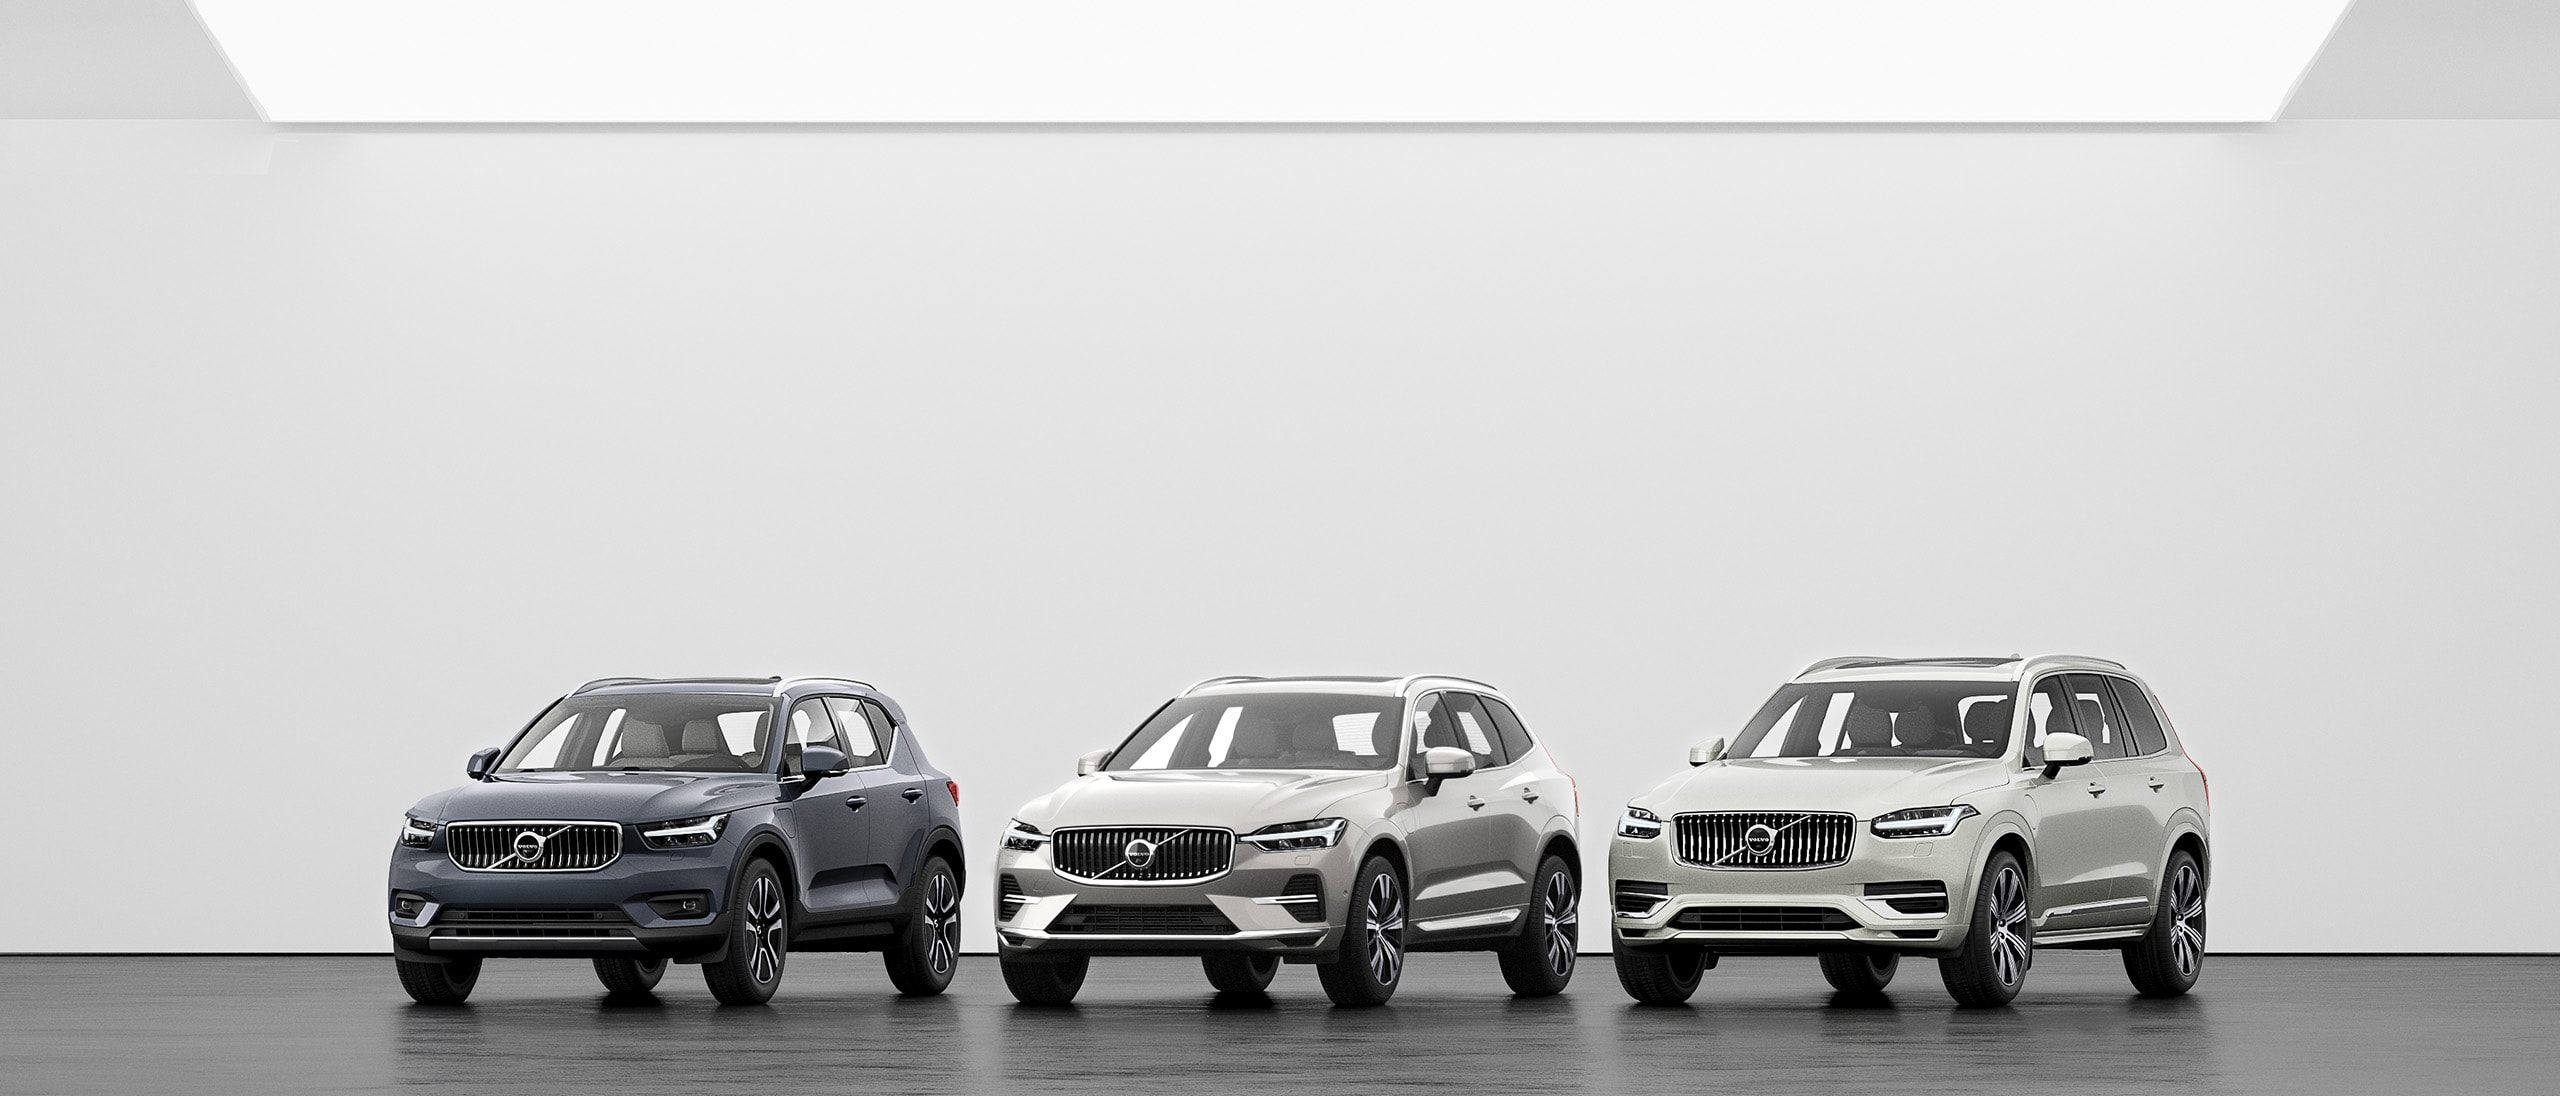 Մոխրագույն հատակին կանգնած Volvo XC40, XC60 և XC90 քաղաքային ամենագնացների մոդելային շարքը: